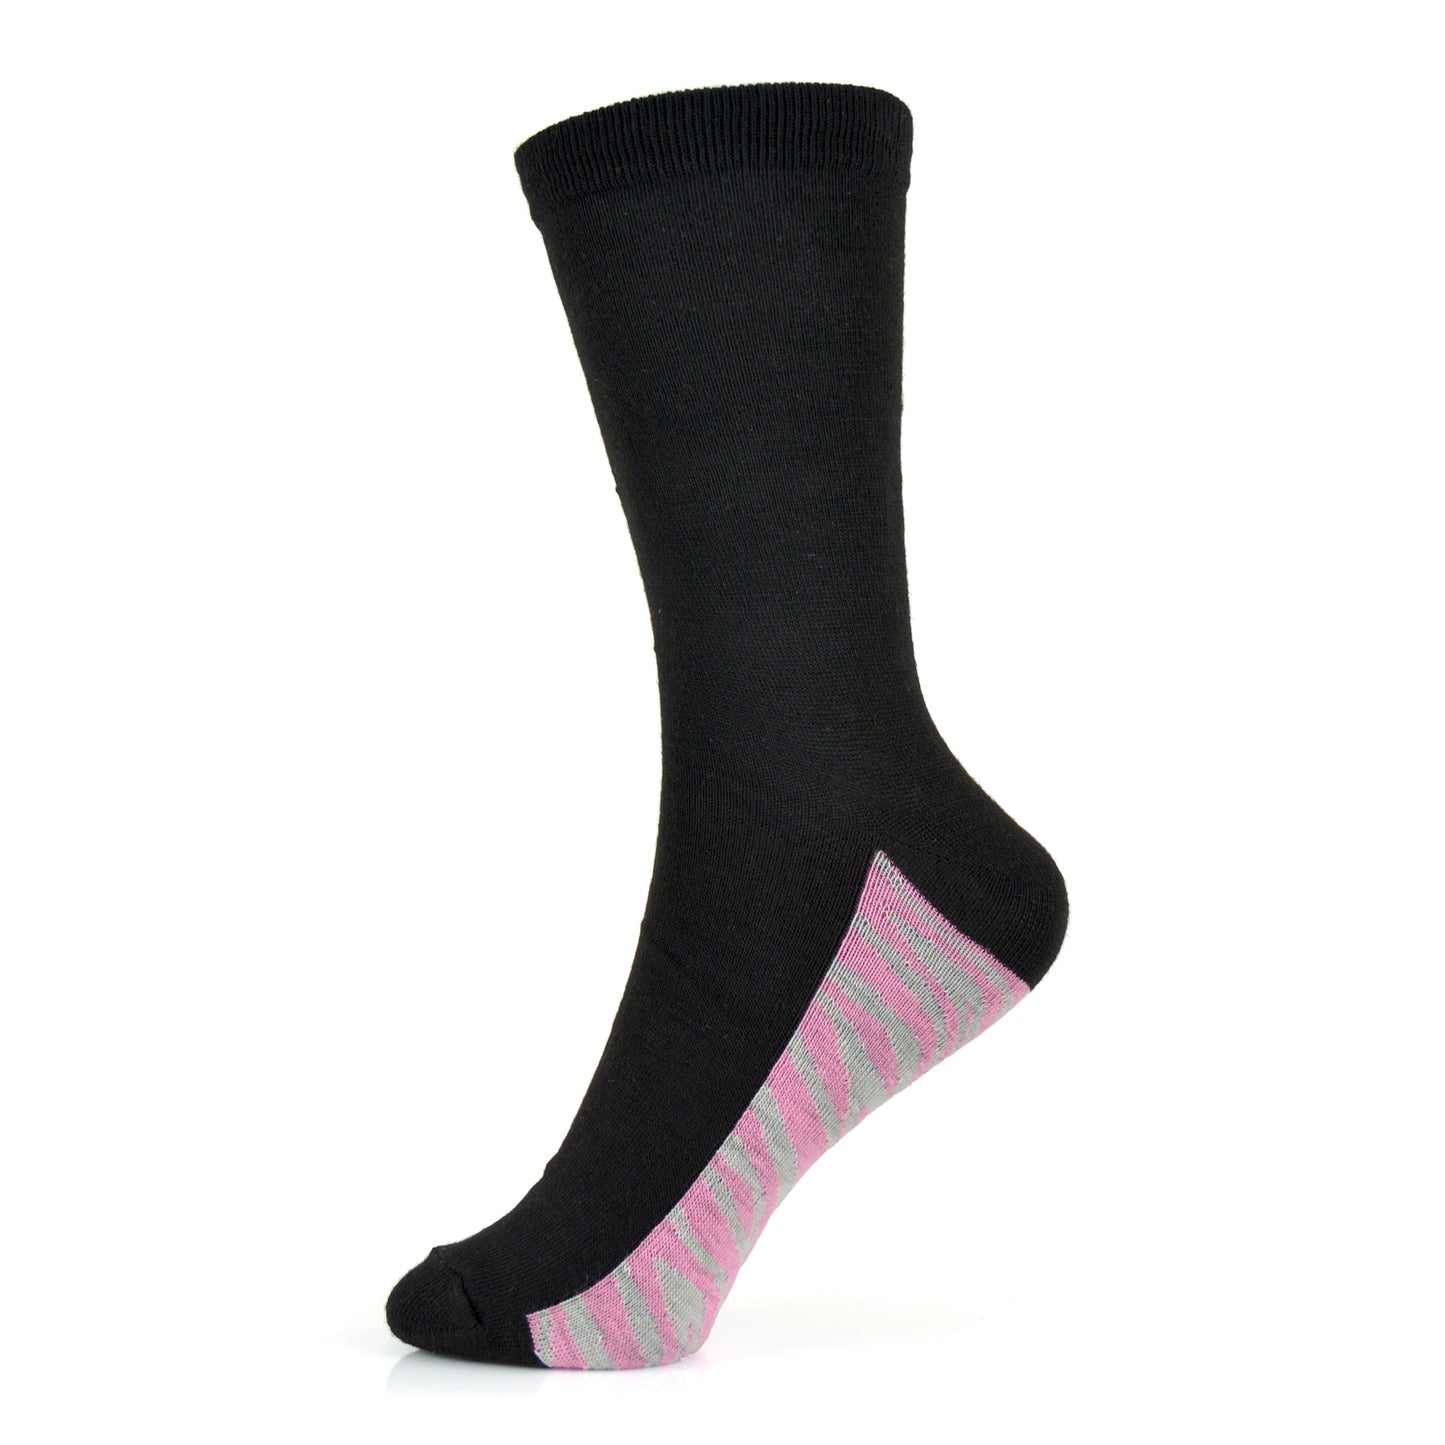 6 Pairs Ladies Black Ankle Socks with Animal Print Soles